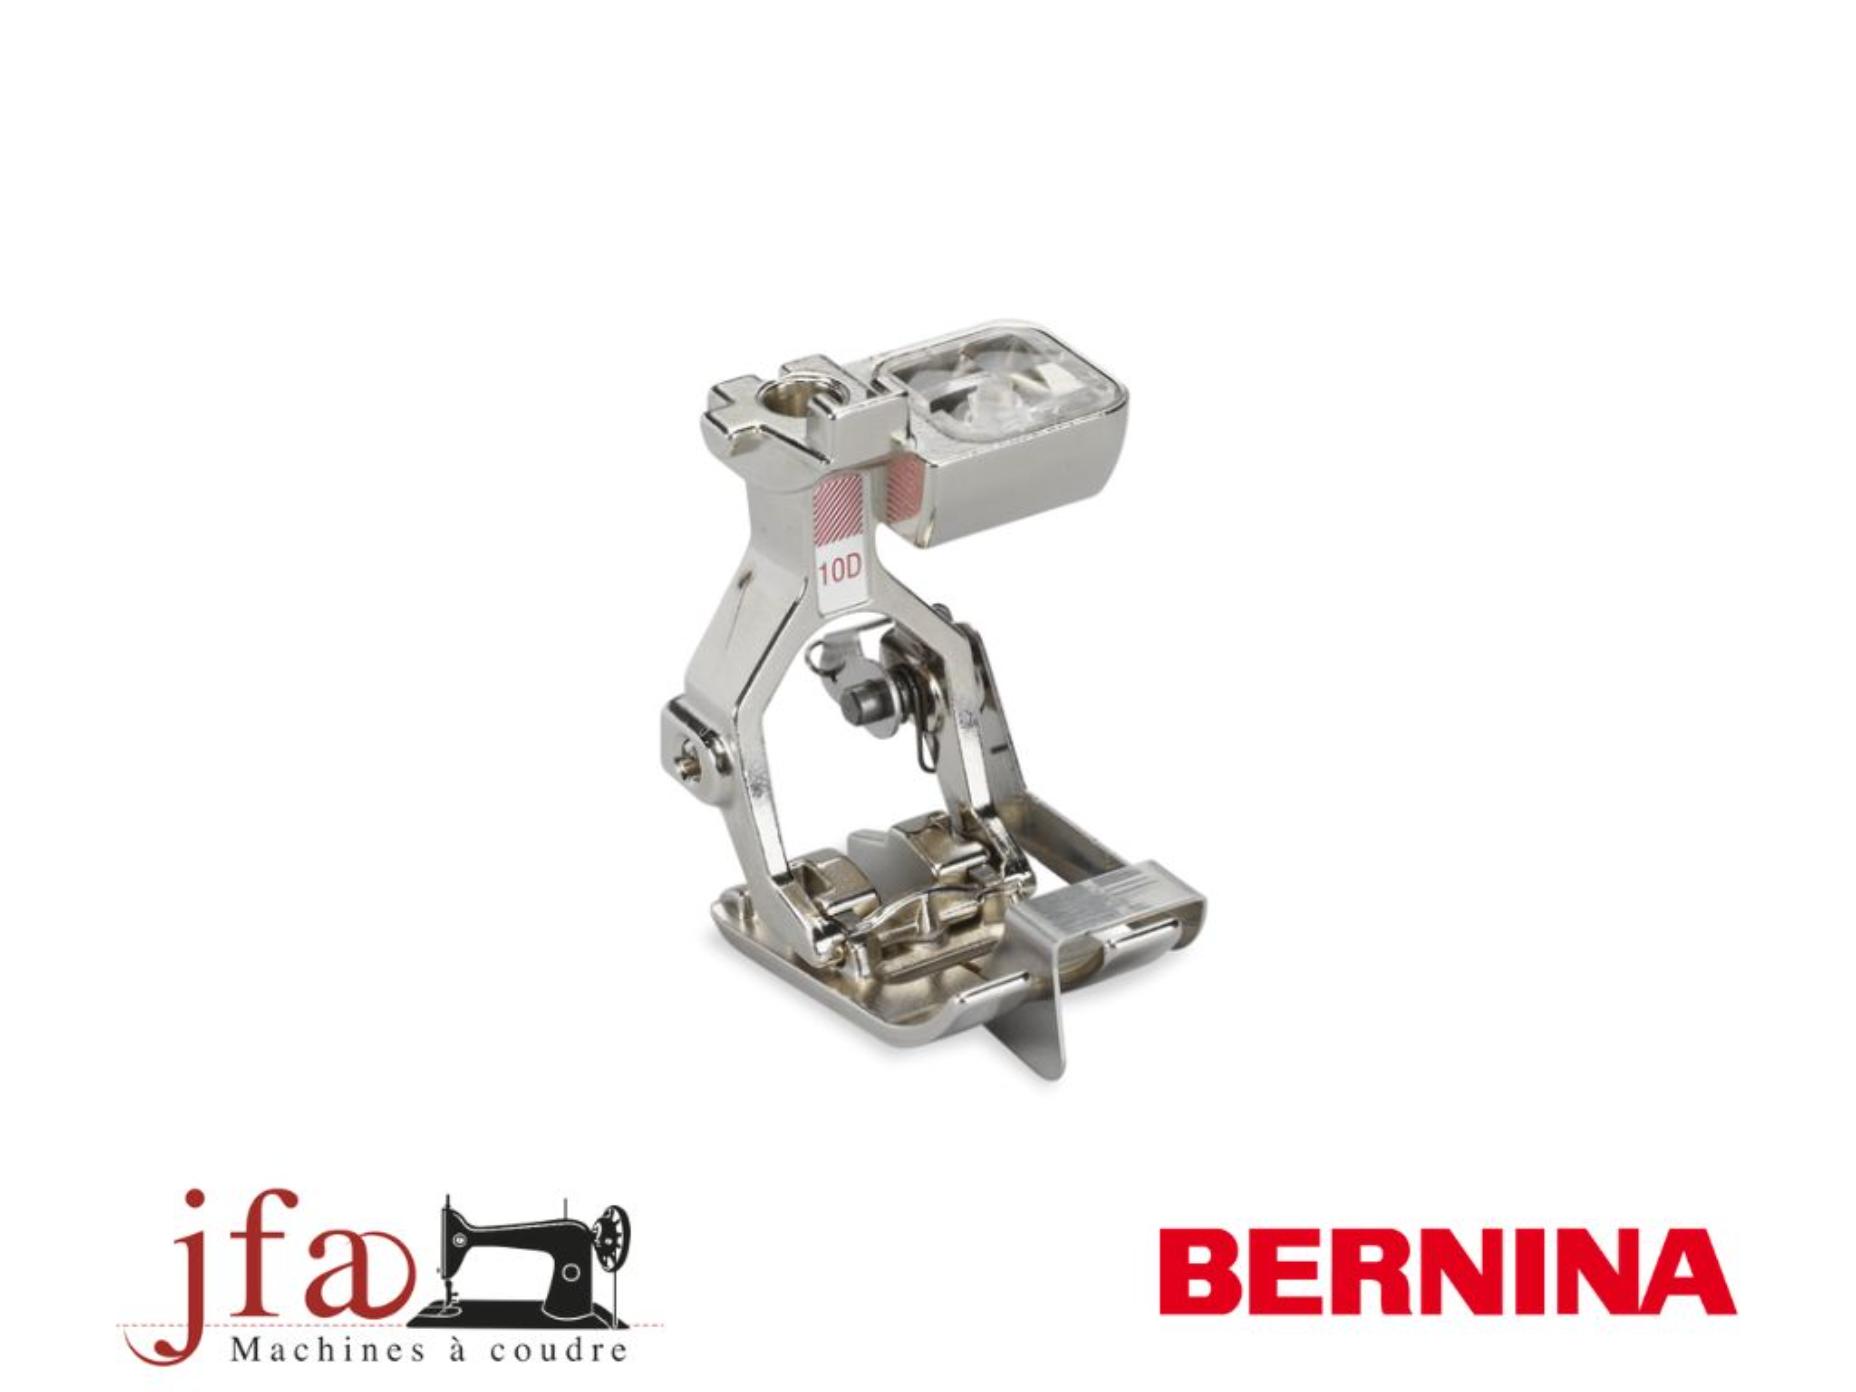 Pied machines à coudre Bernina pour bordure étroite #10D